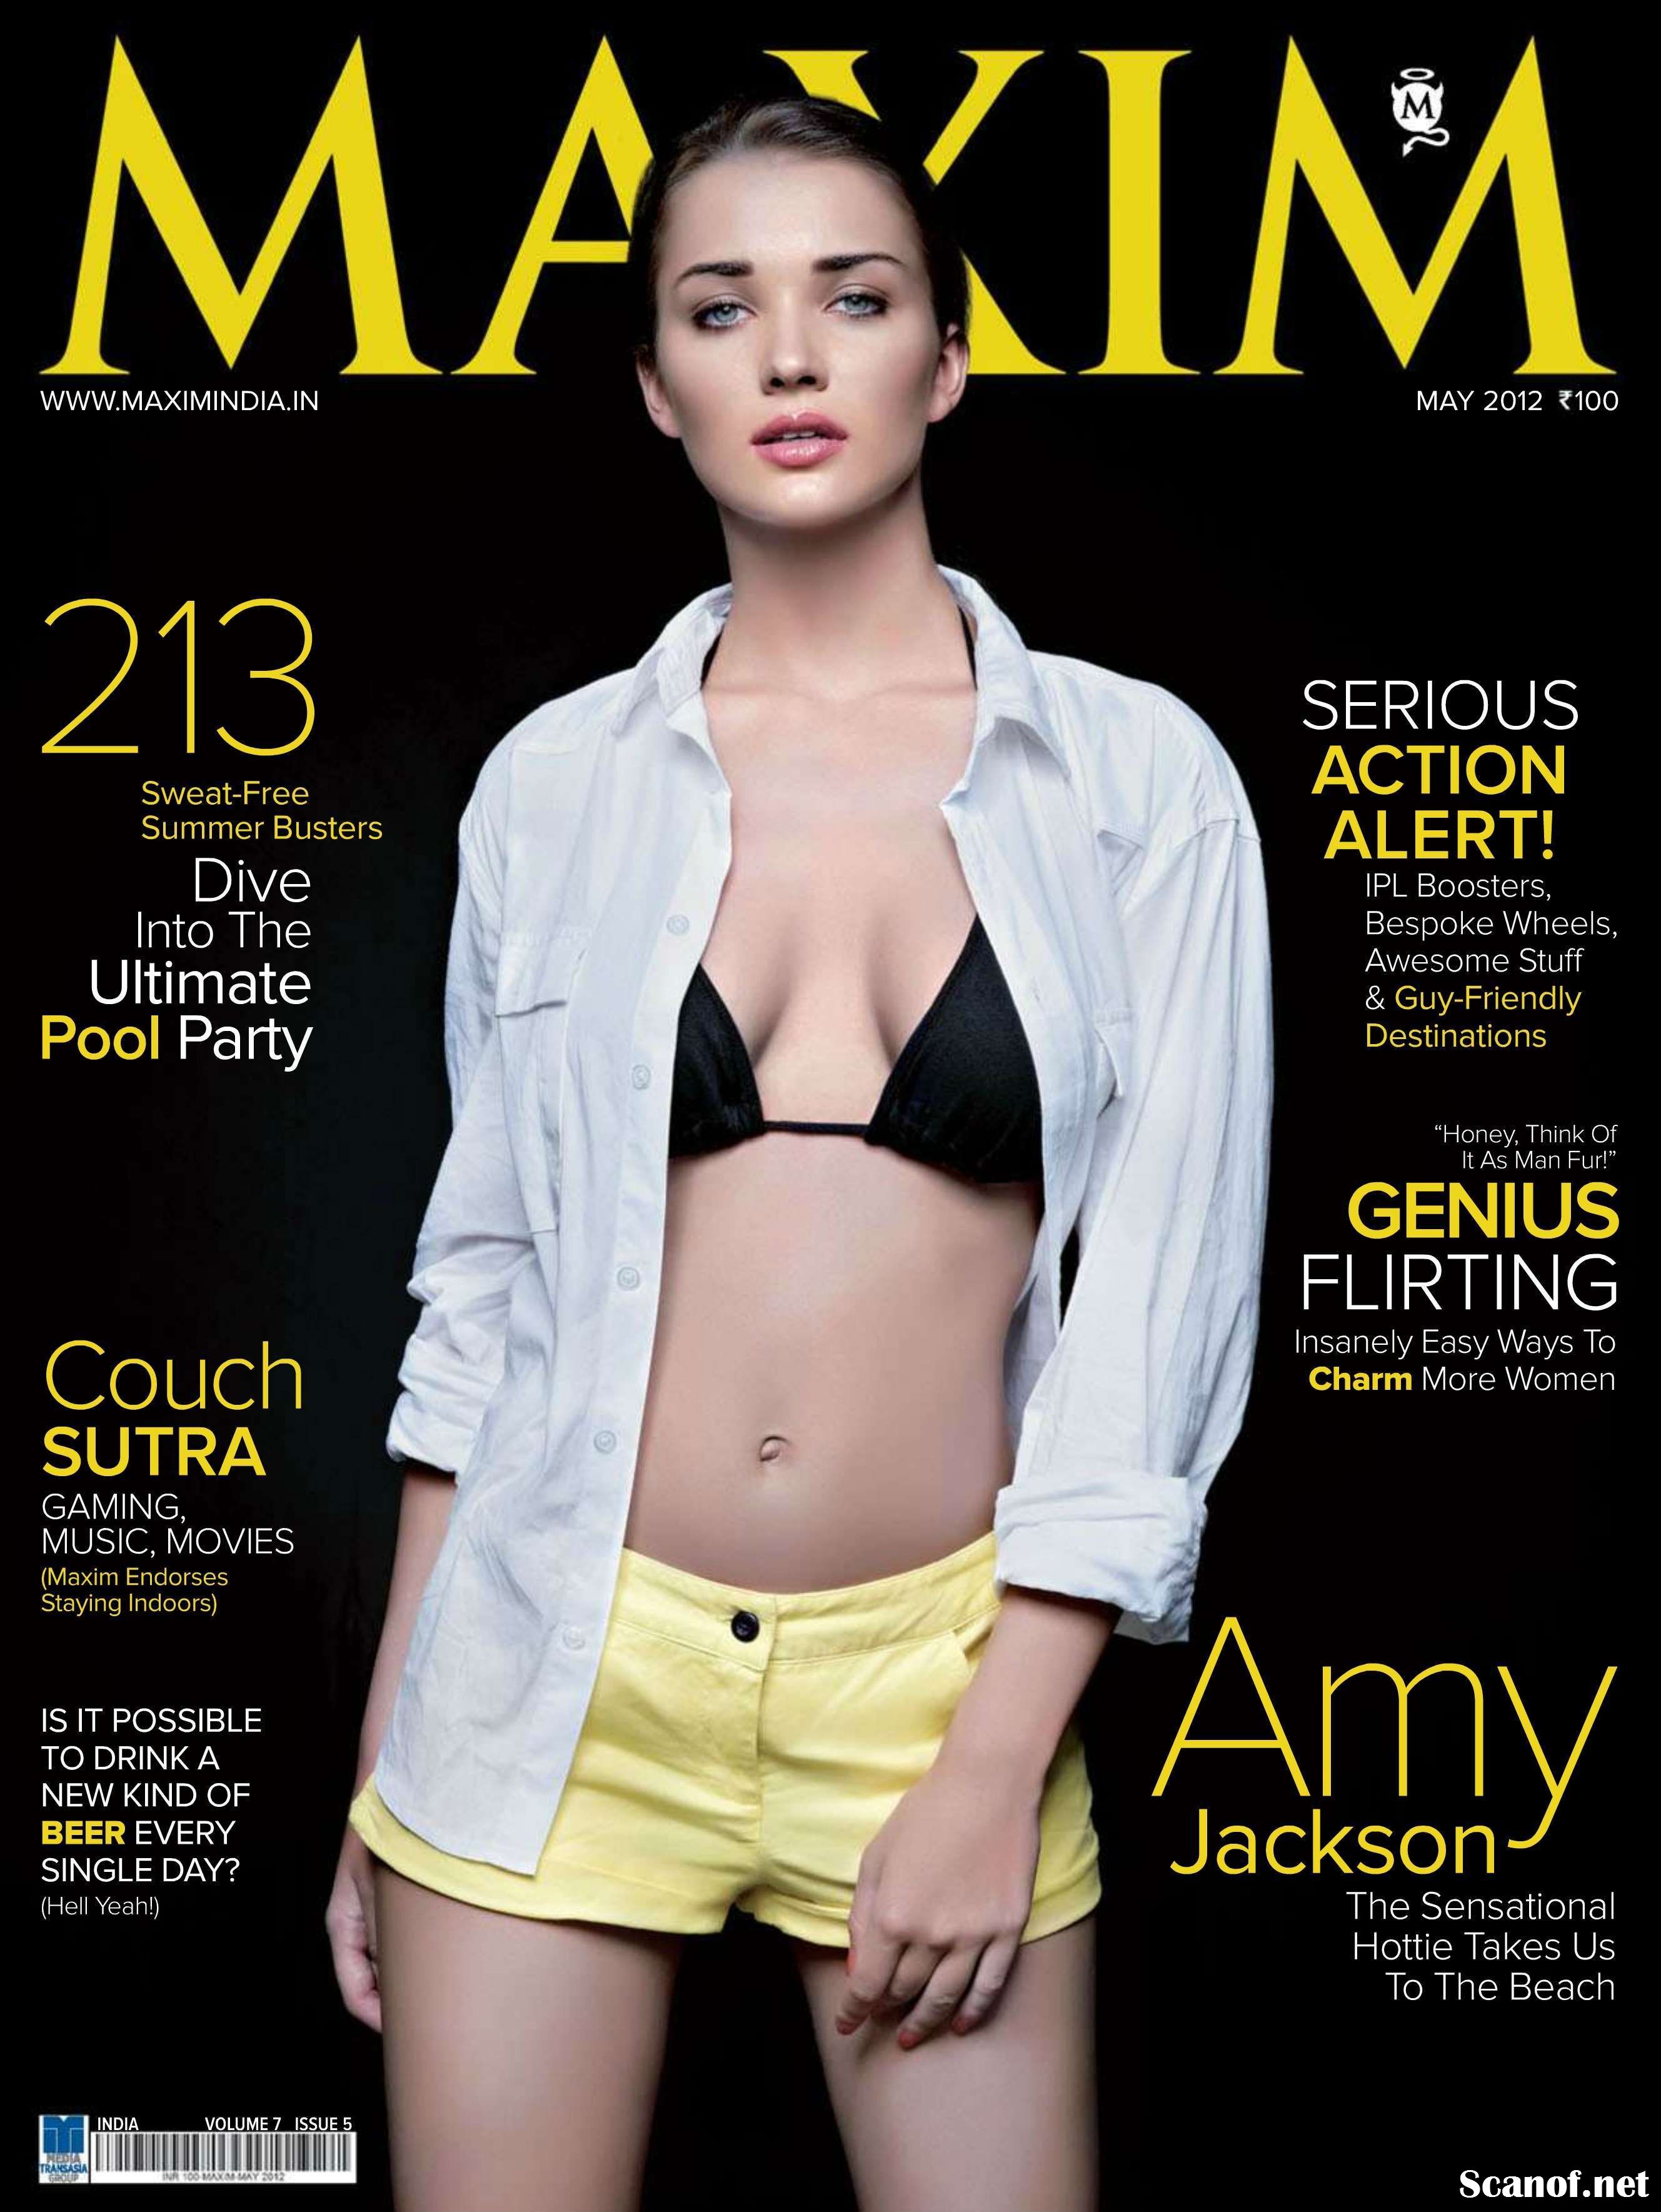 Amy Jackson for Maxim Magazine India